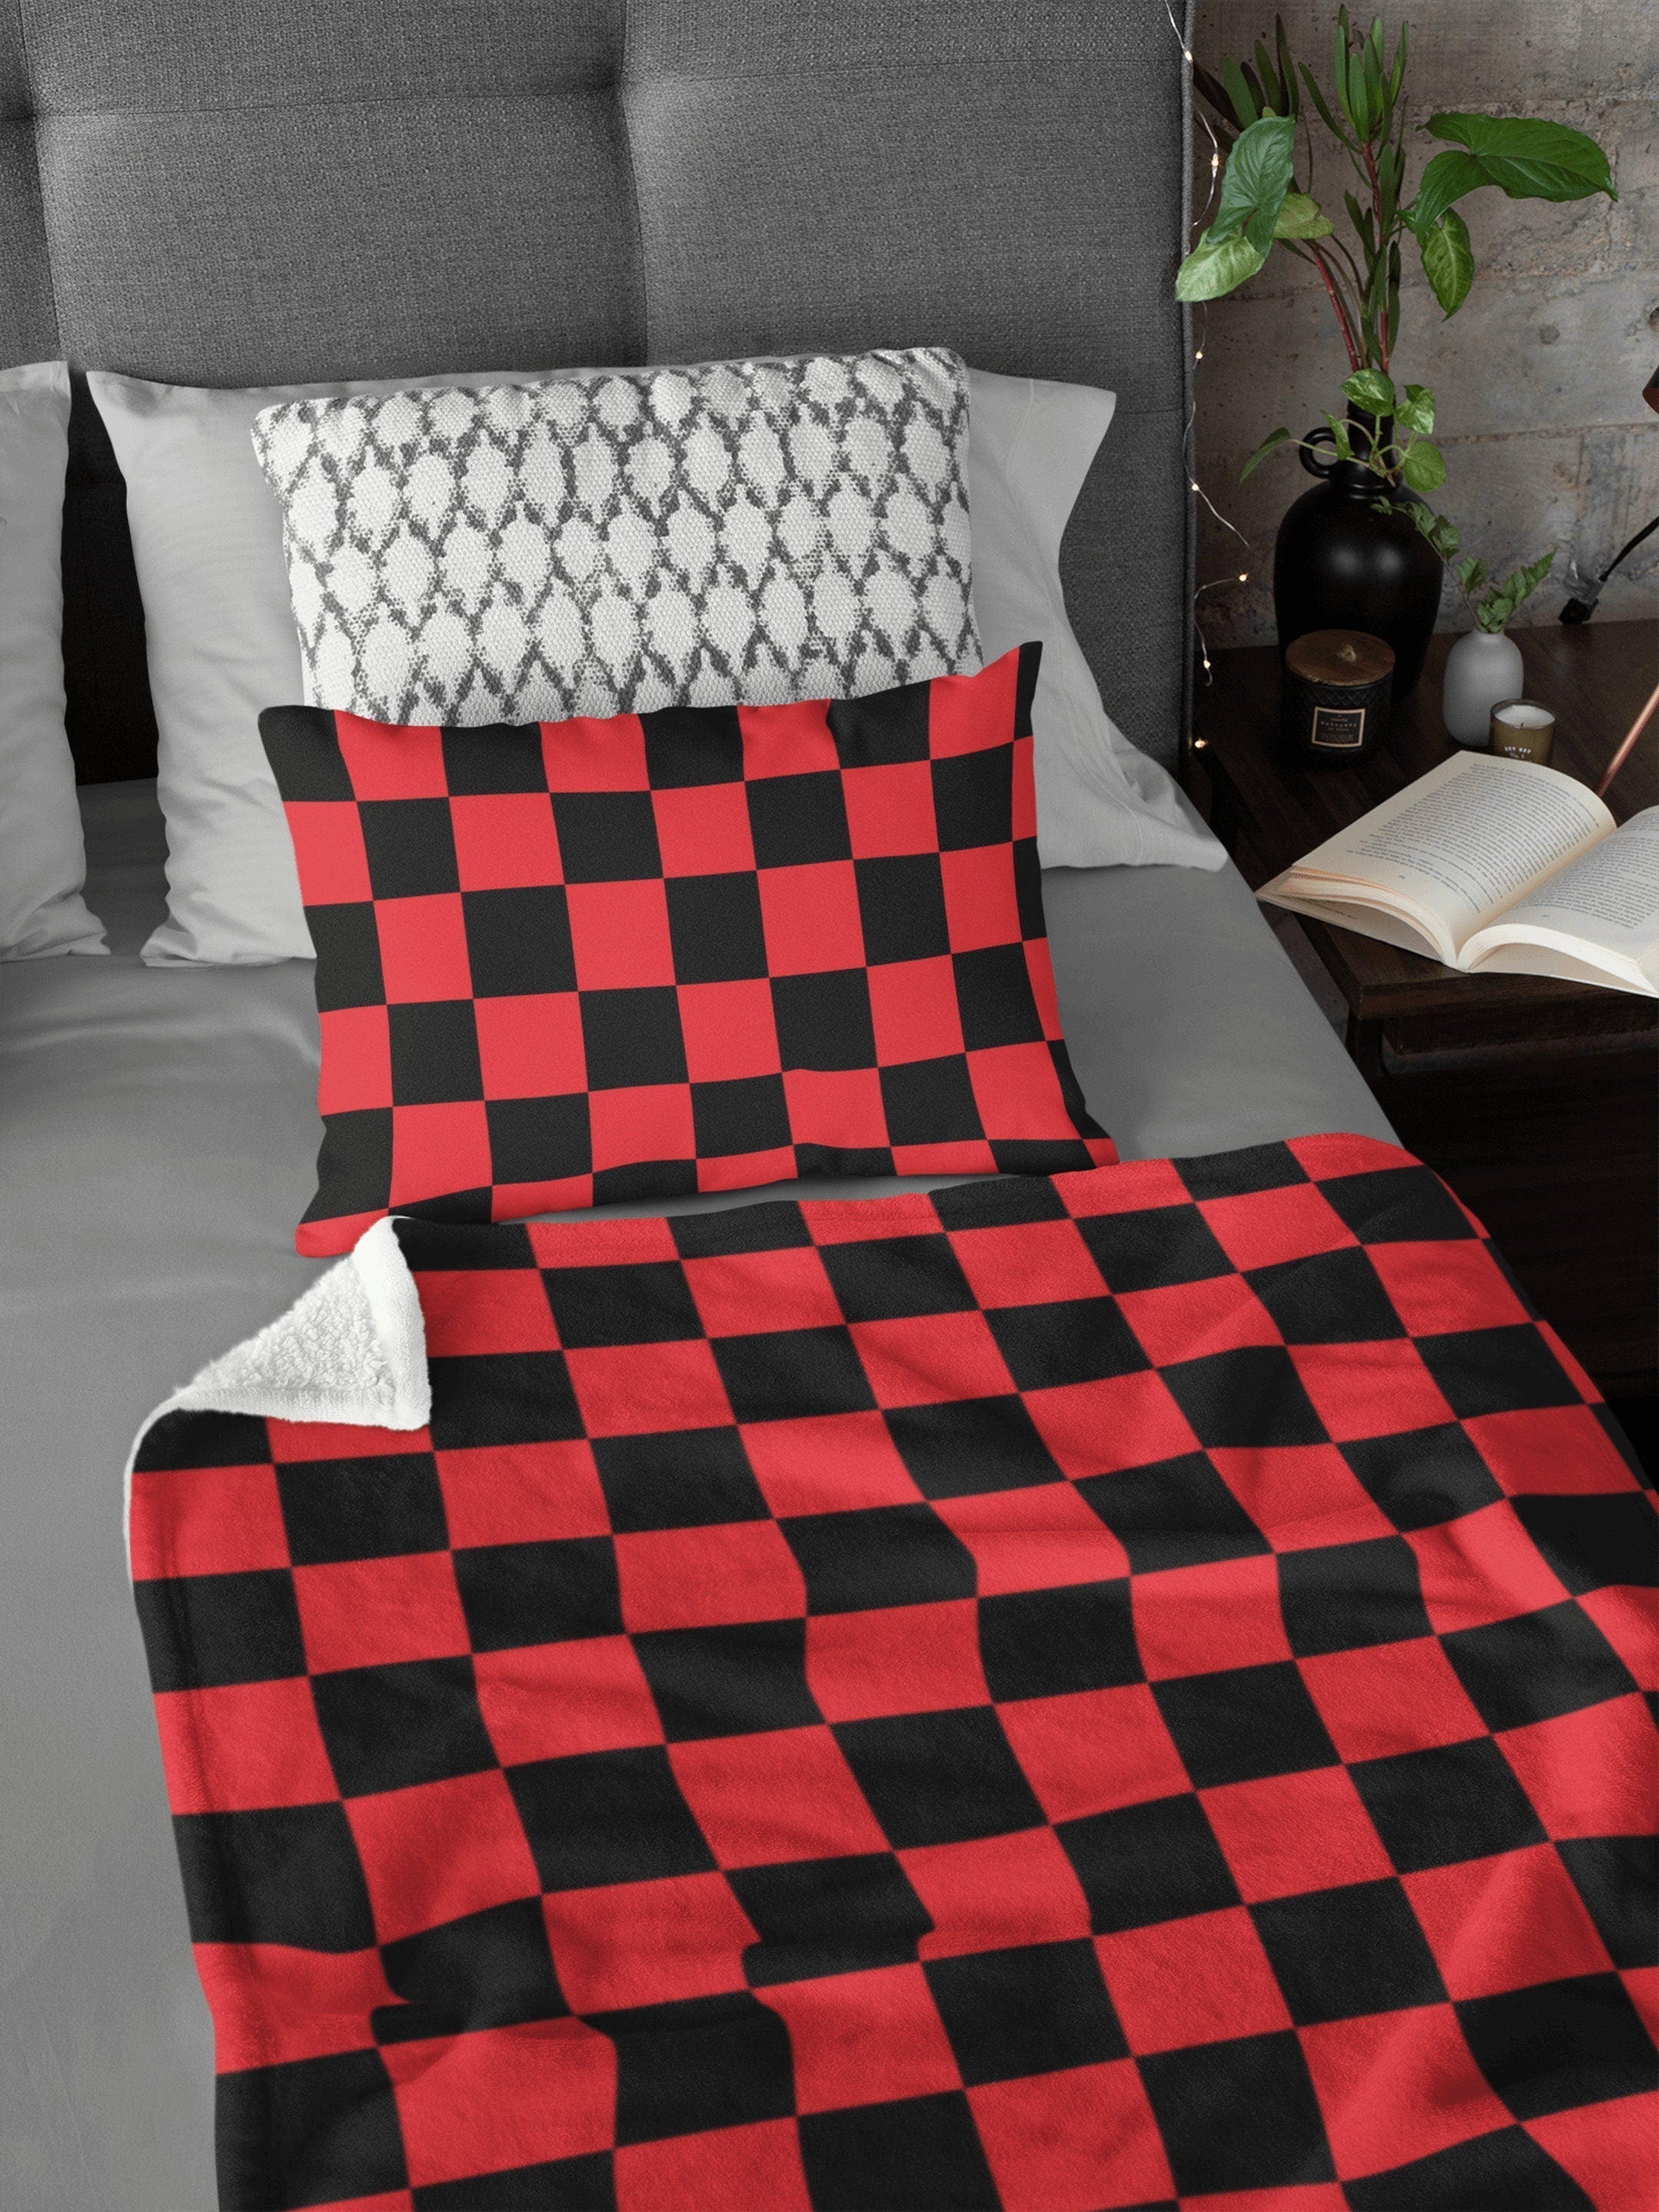 daintyduvet Chess Board Inspired Check Pattern Red Soft Fluffy Velvet Flannel Fleece Throw Blanket